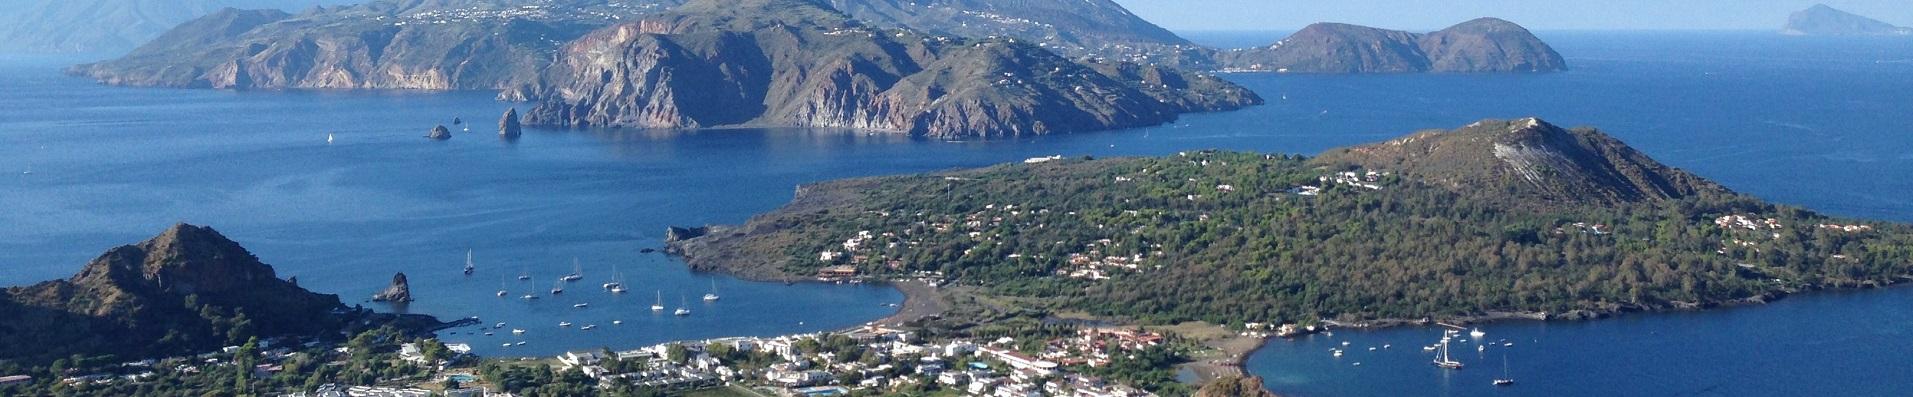 Ville e case vacanze in Sicilia nelle Isole Eolie